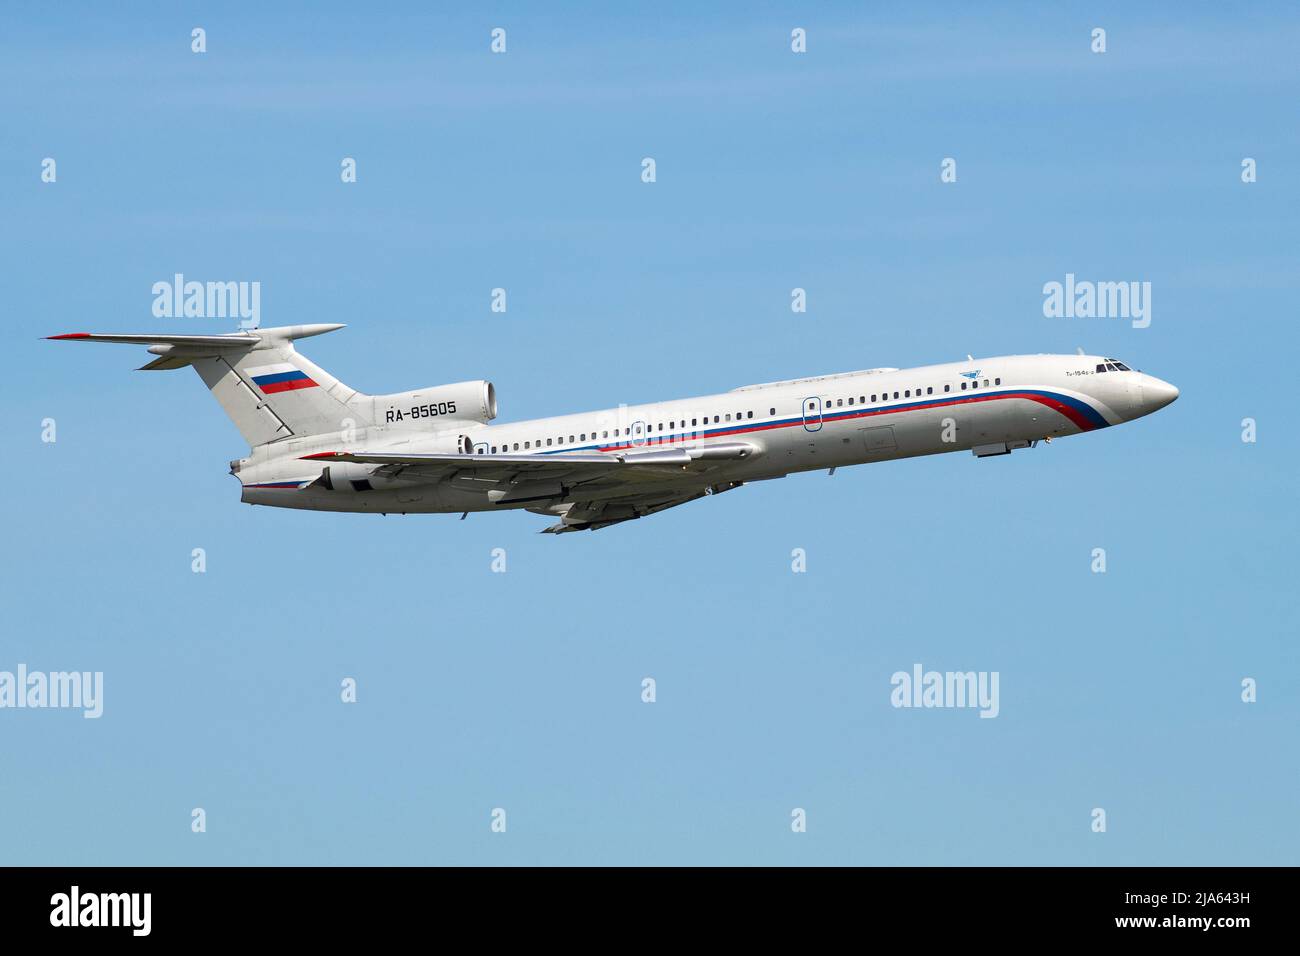 SANKT PETERSBURG, RUSSLAND - 20. MAI 2022: Fliegendes Flugzeug der TU-154B-2 (RA-85605) am blauen Himmel Stockfoto